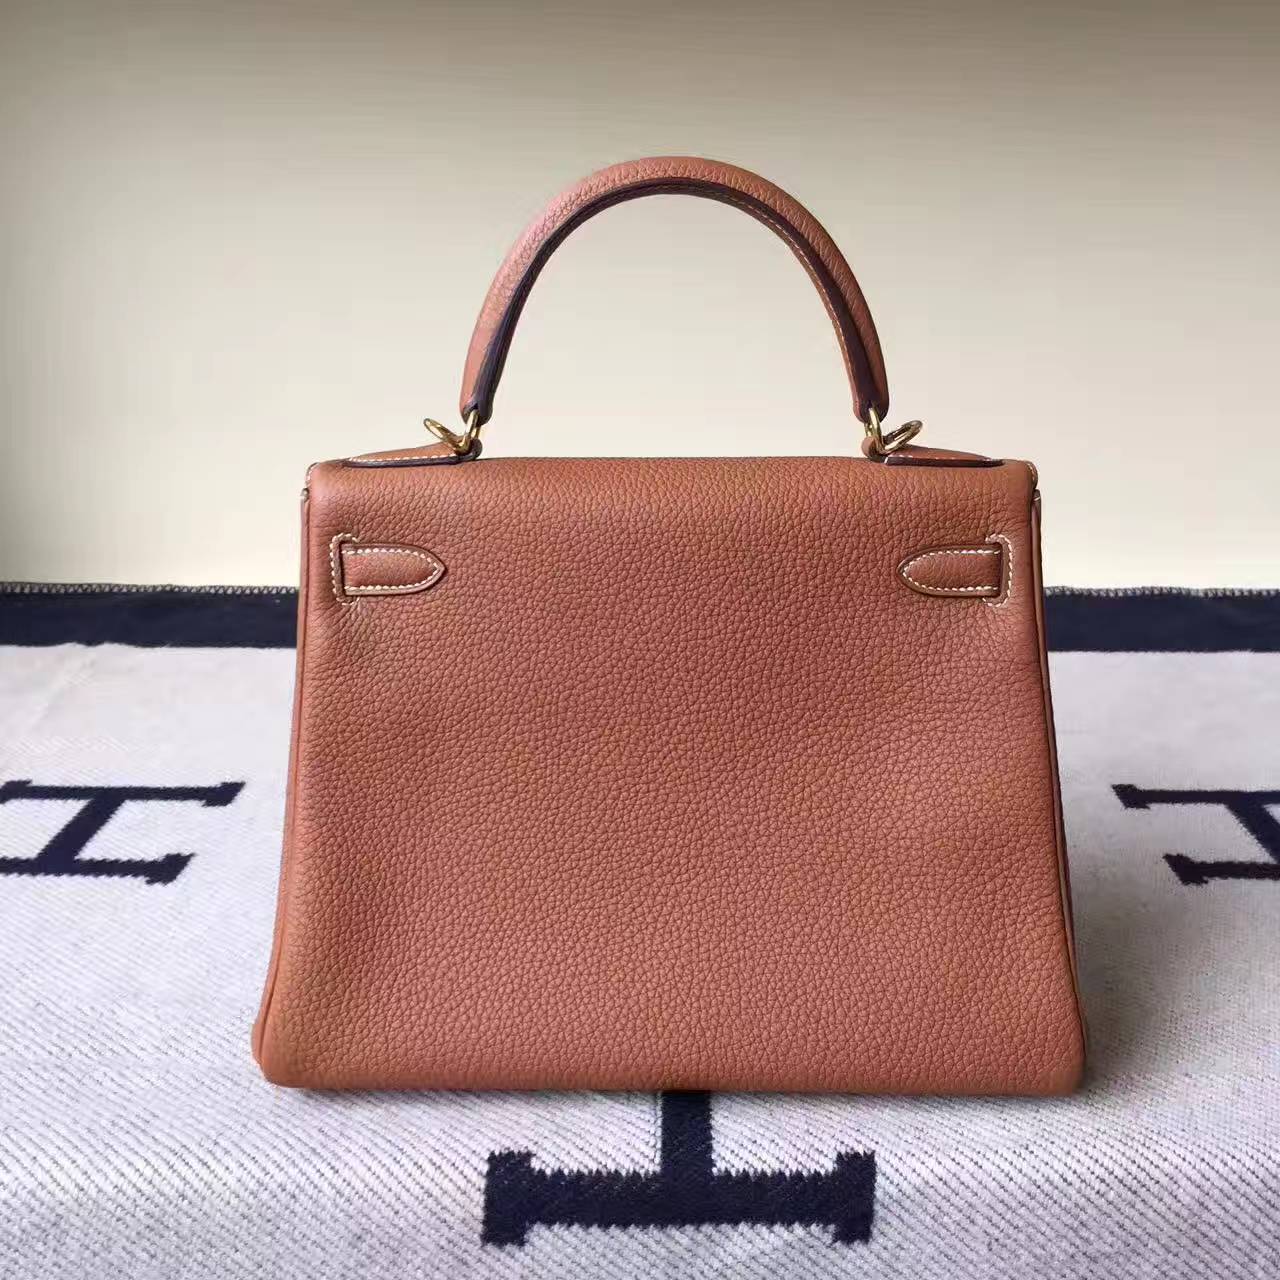 Discount Hermes Kelly 28cm Handbag in CK37 Gold Togo Leather